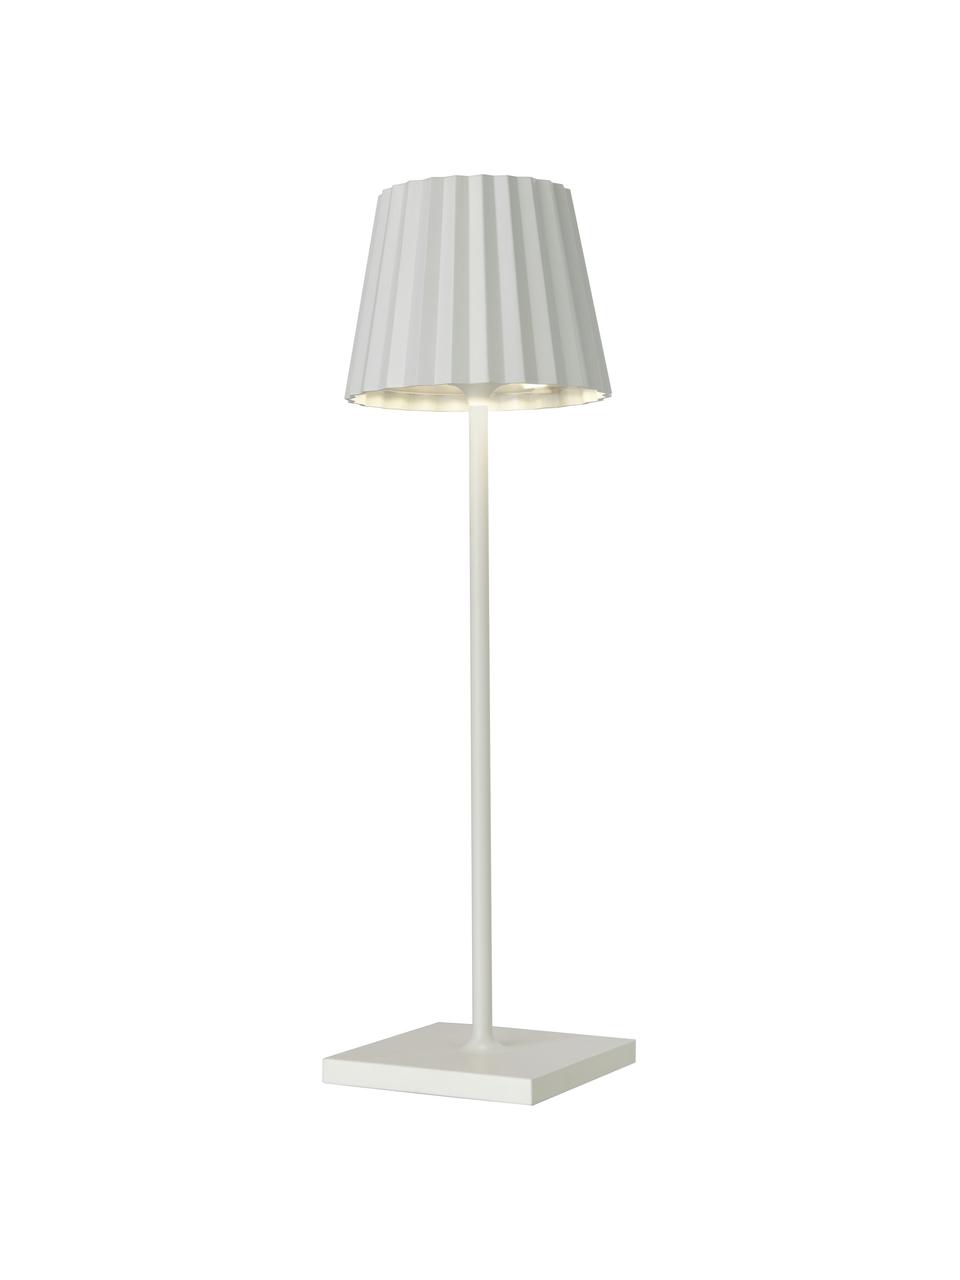 Lampada dimmerabile mobile da tavolo per esterni Trellia, Paralume: alluminio verniciato, Base della lampada: alluminio verniciato, Bianco, Ø 12 x Alt. 38 cm